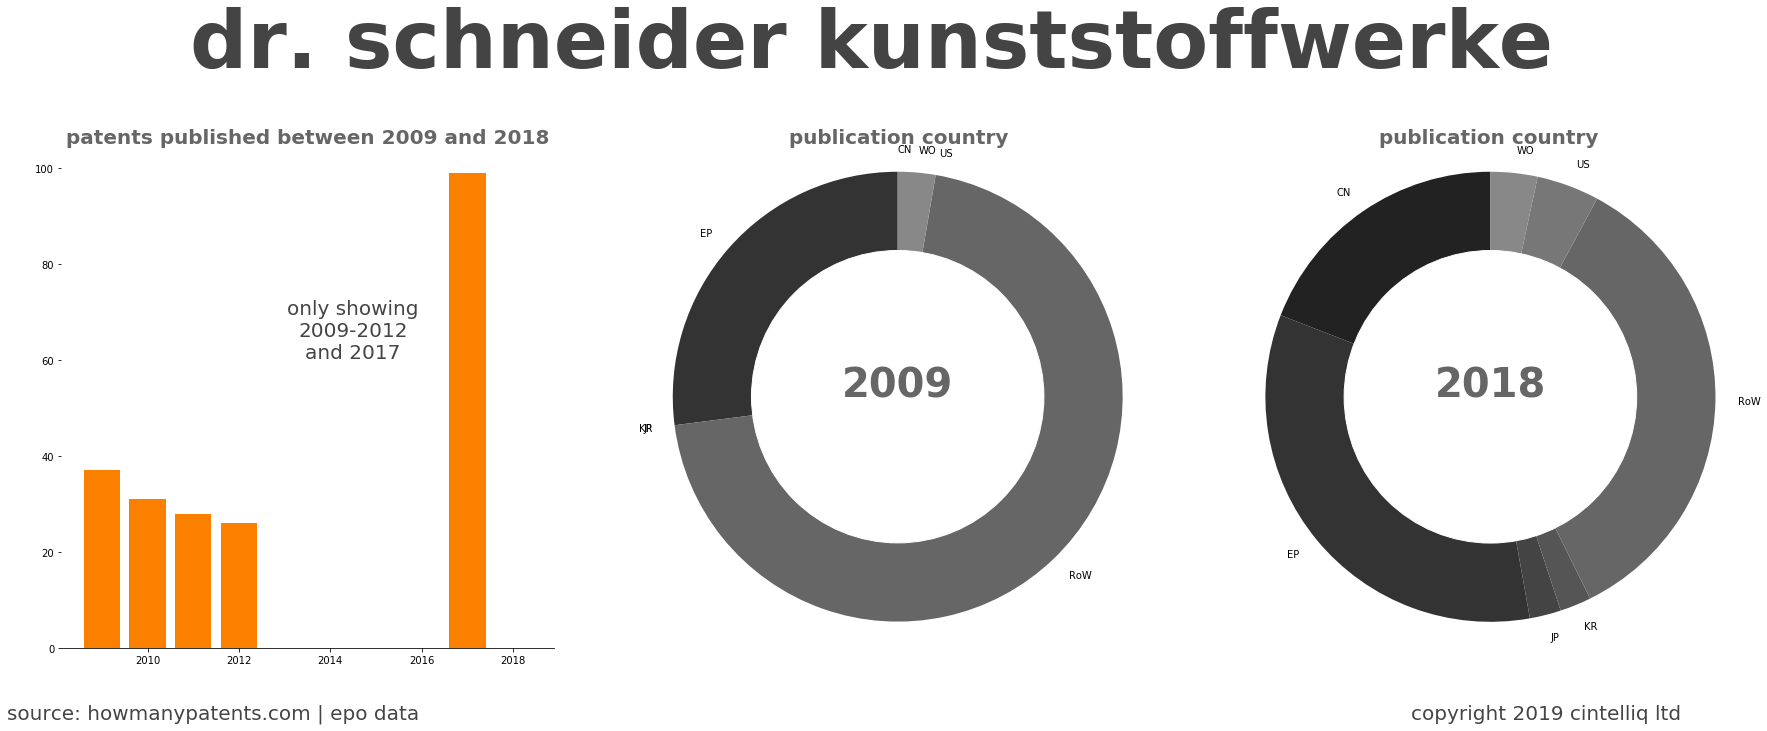 summary of patents for Dr. Schneider Kunststoffwerke